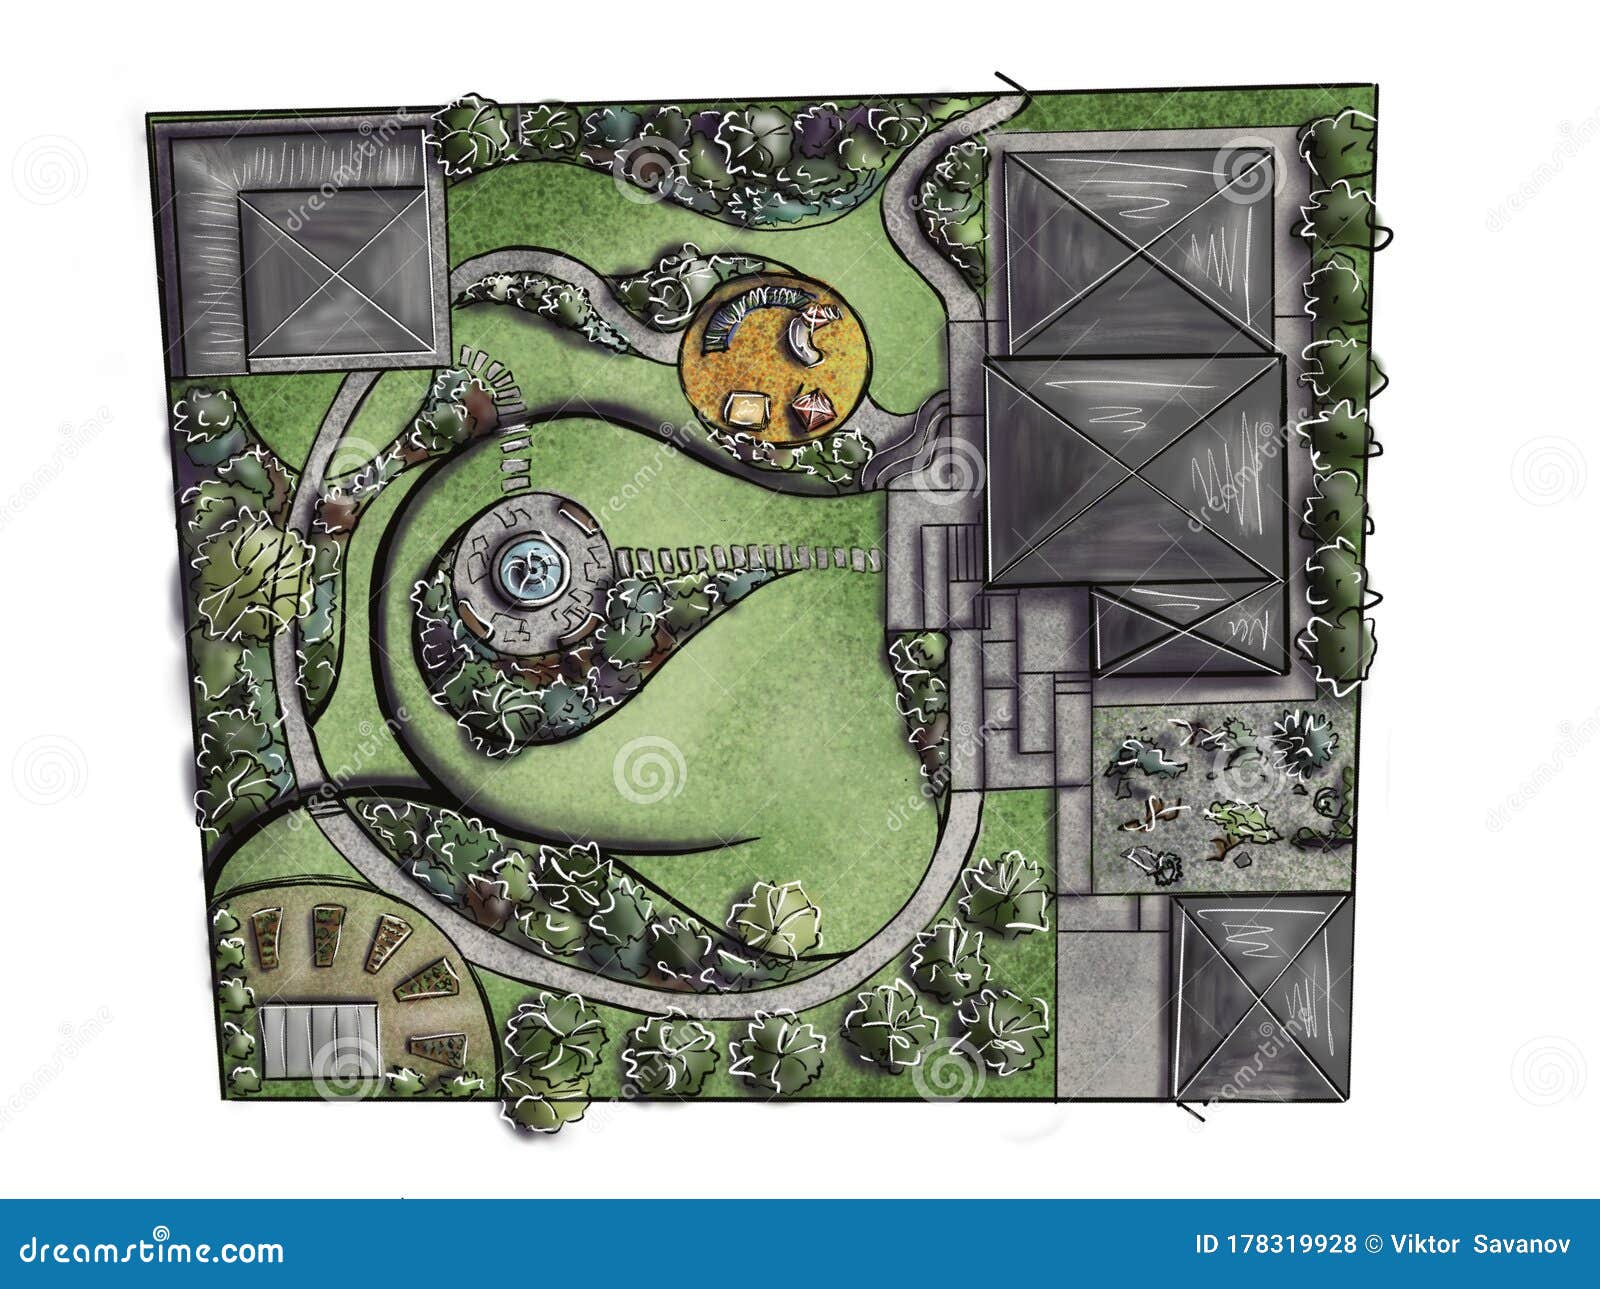 A landscape architect designed a circular garden